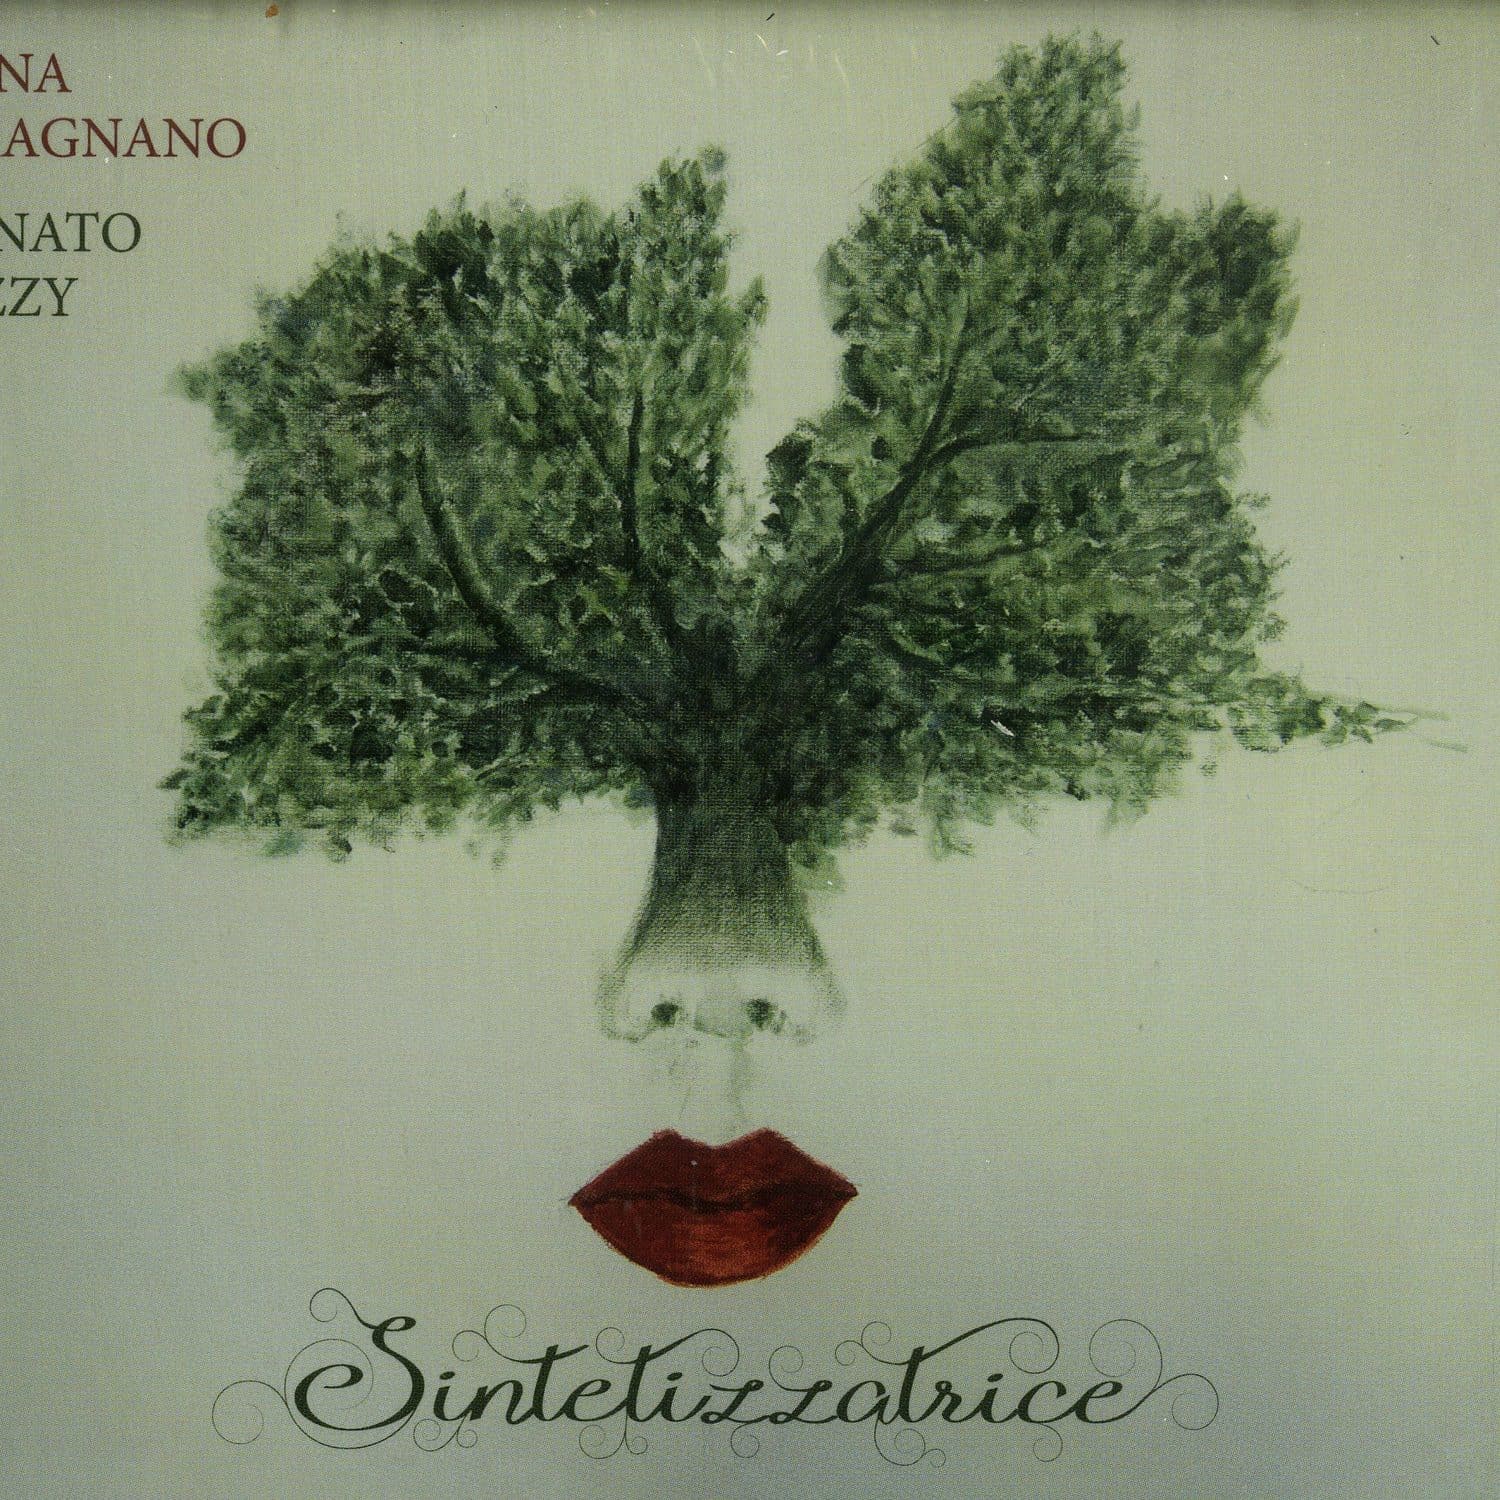 Anna Caragnano & Donato Dozzy - SINTETIZZATRICE 